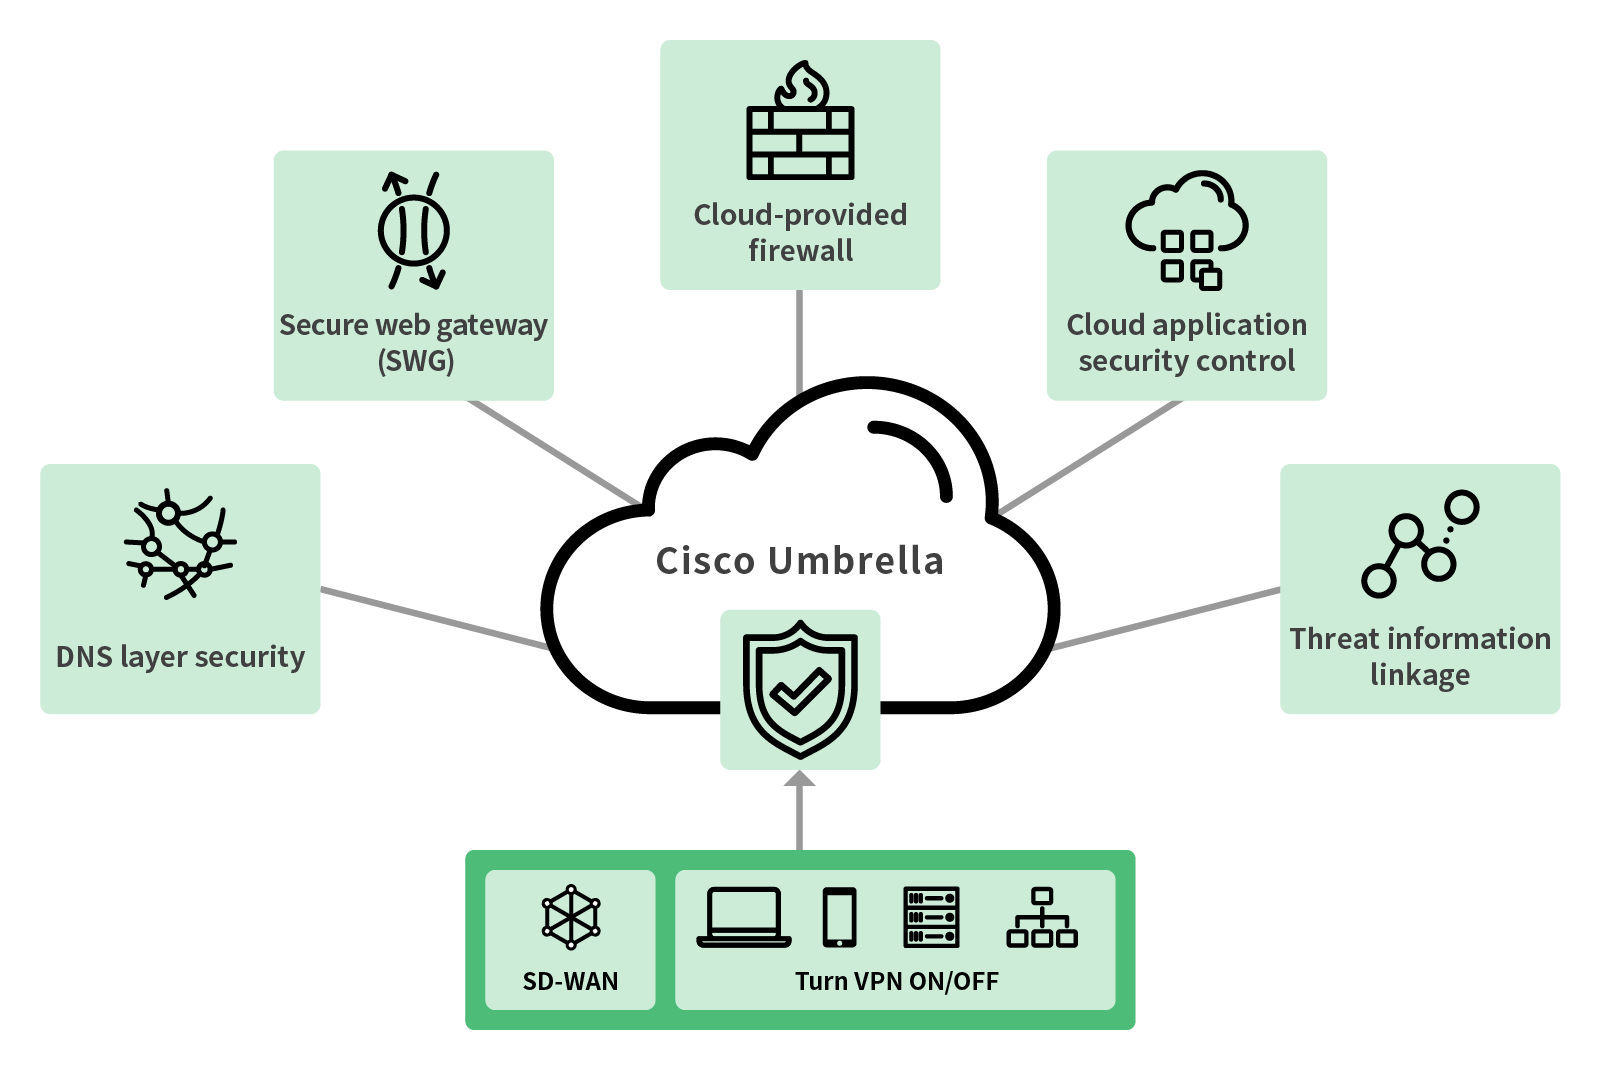 Secure access com. Cisco Umbrella безопасность. Firewall в cloud. Cisco Umbrella Socks. Cisco Umbrella Insights Virtual Appliance.